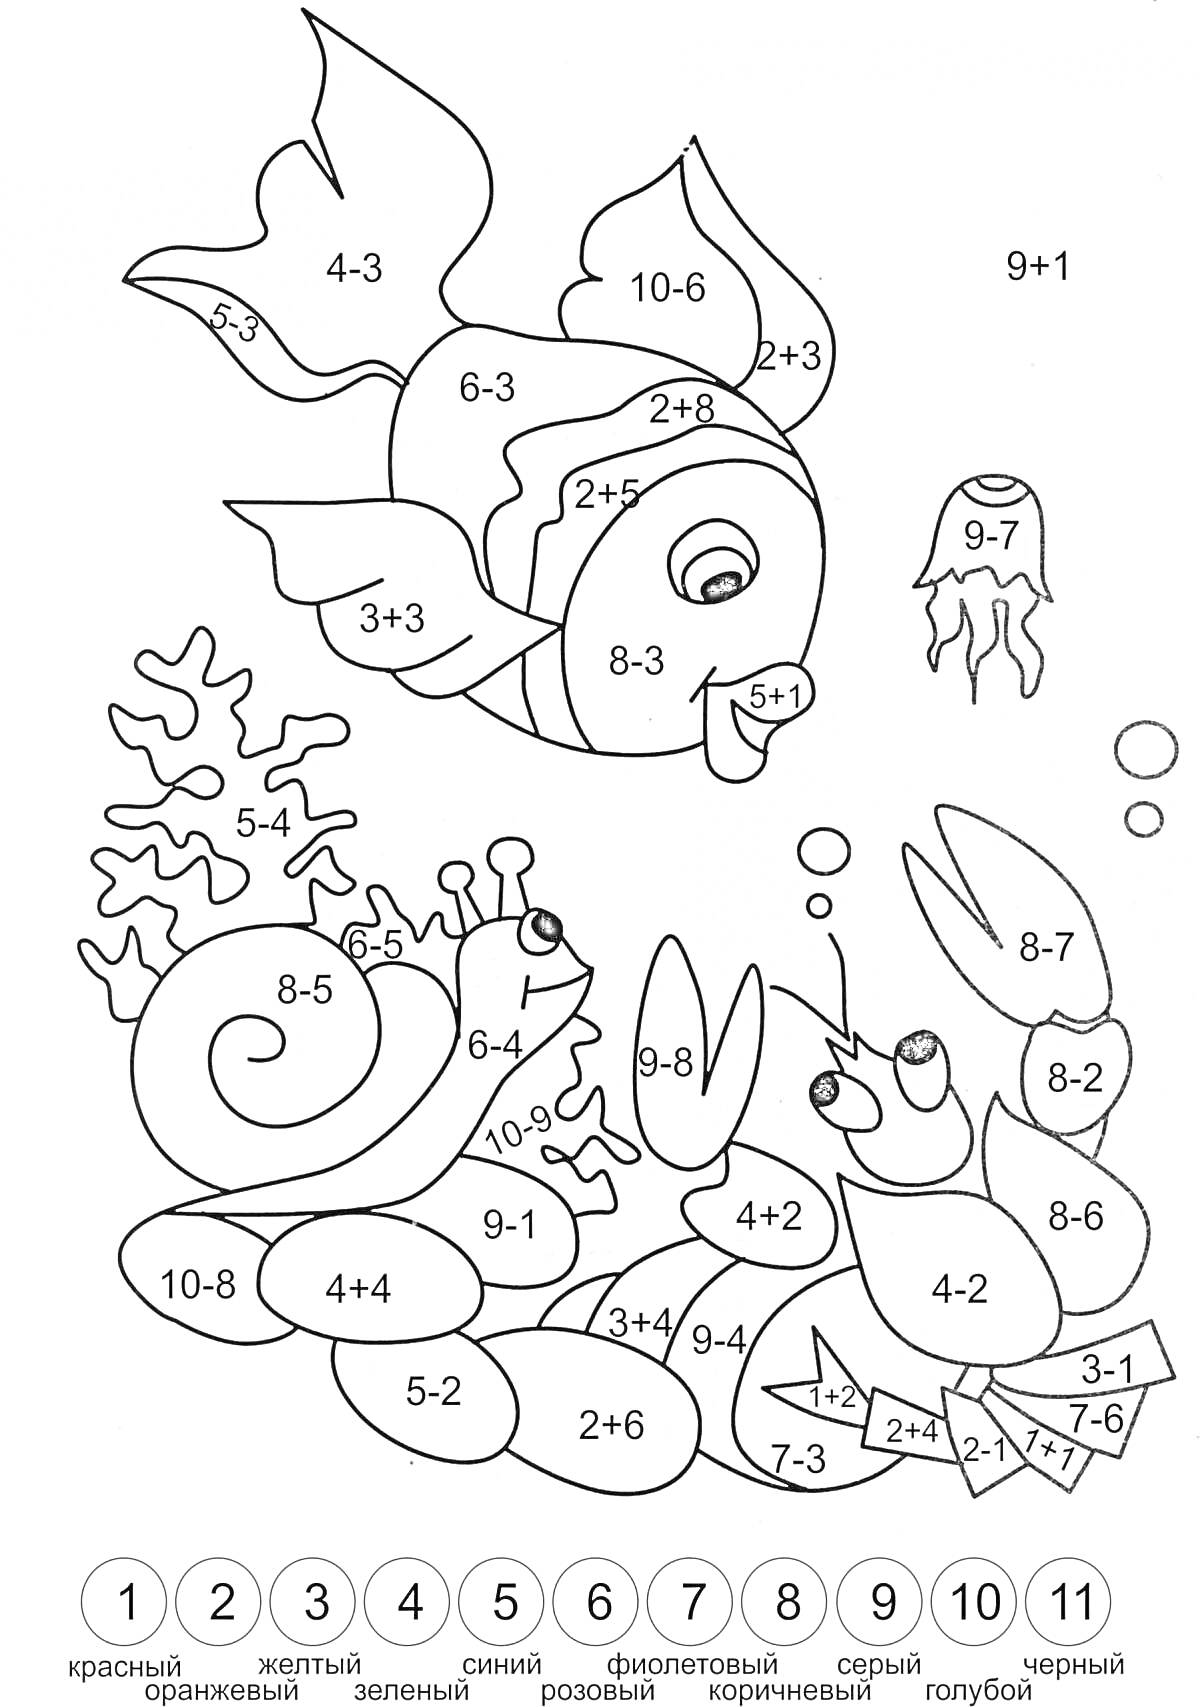 Раскраска Раскраска с морскими животными и примерами сложения и вычитания в пределах 10 для 1 класса